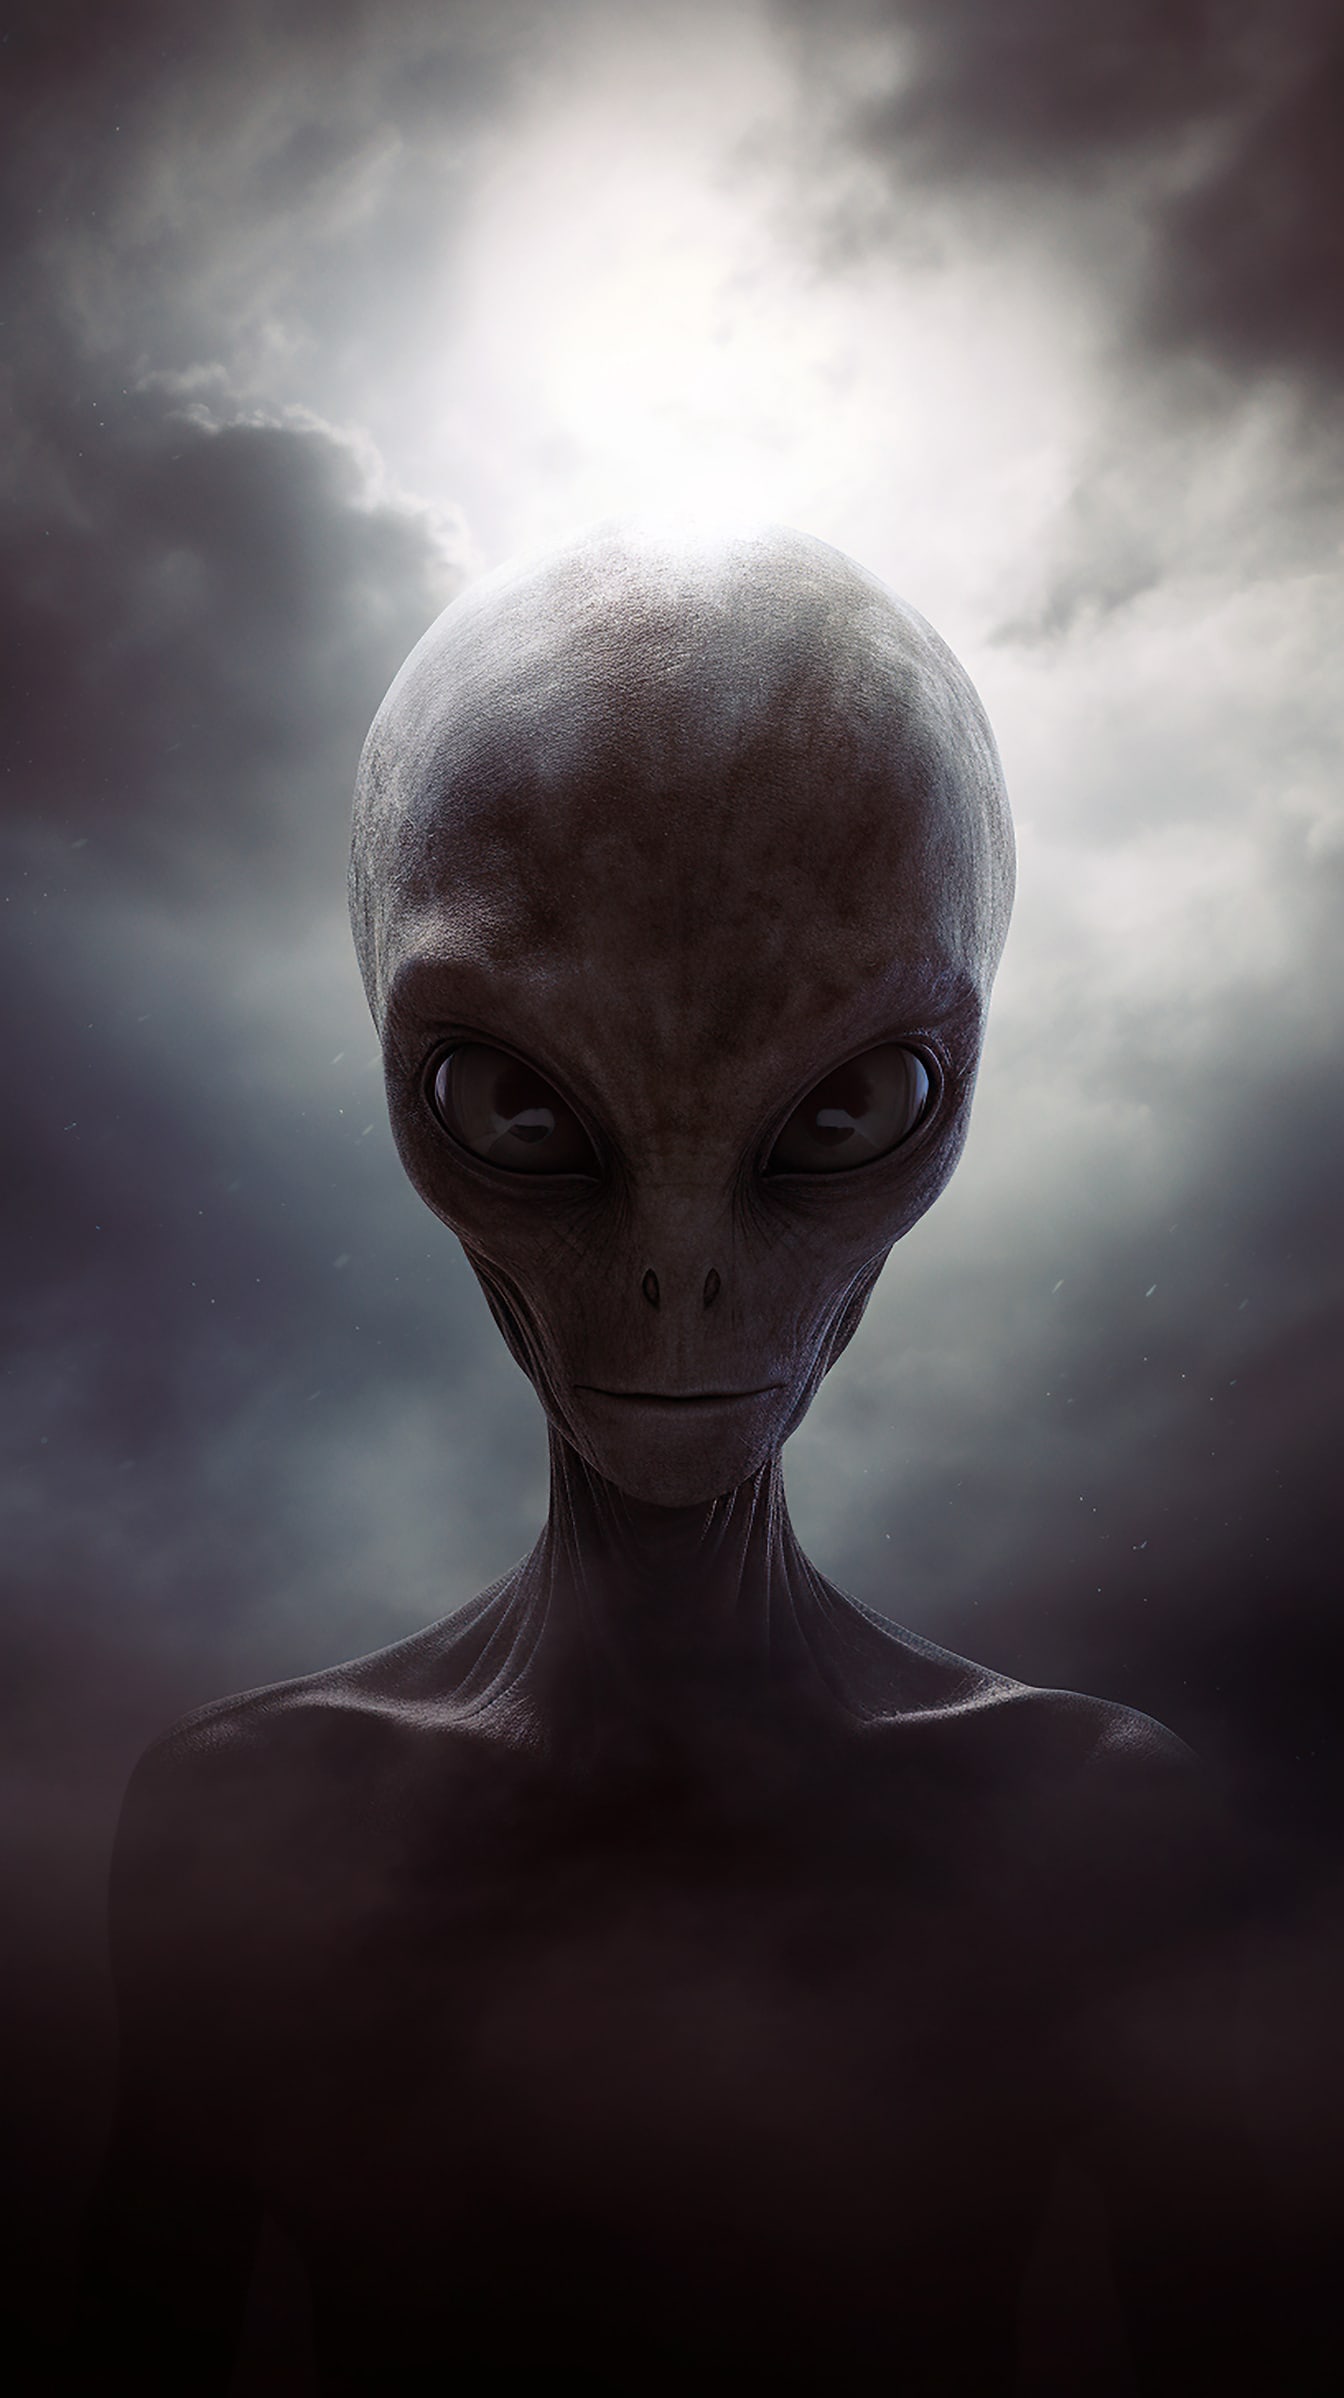 Retrato de criatura alienígena humanoide con piel y ojos grises